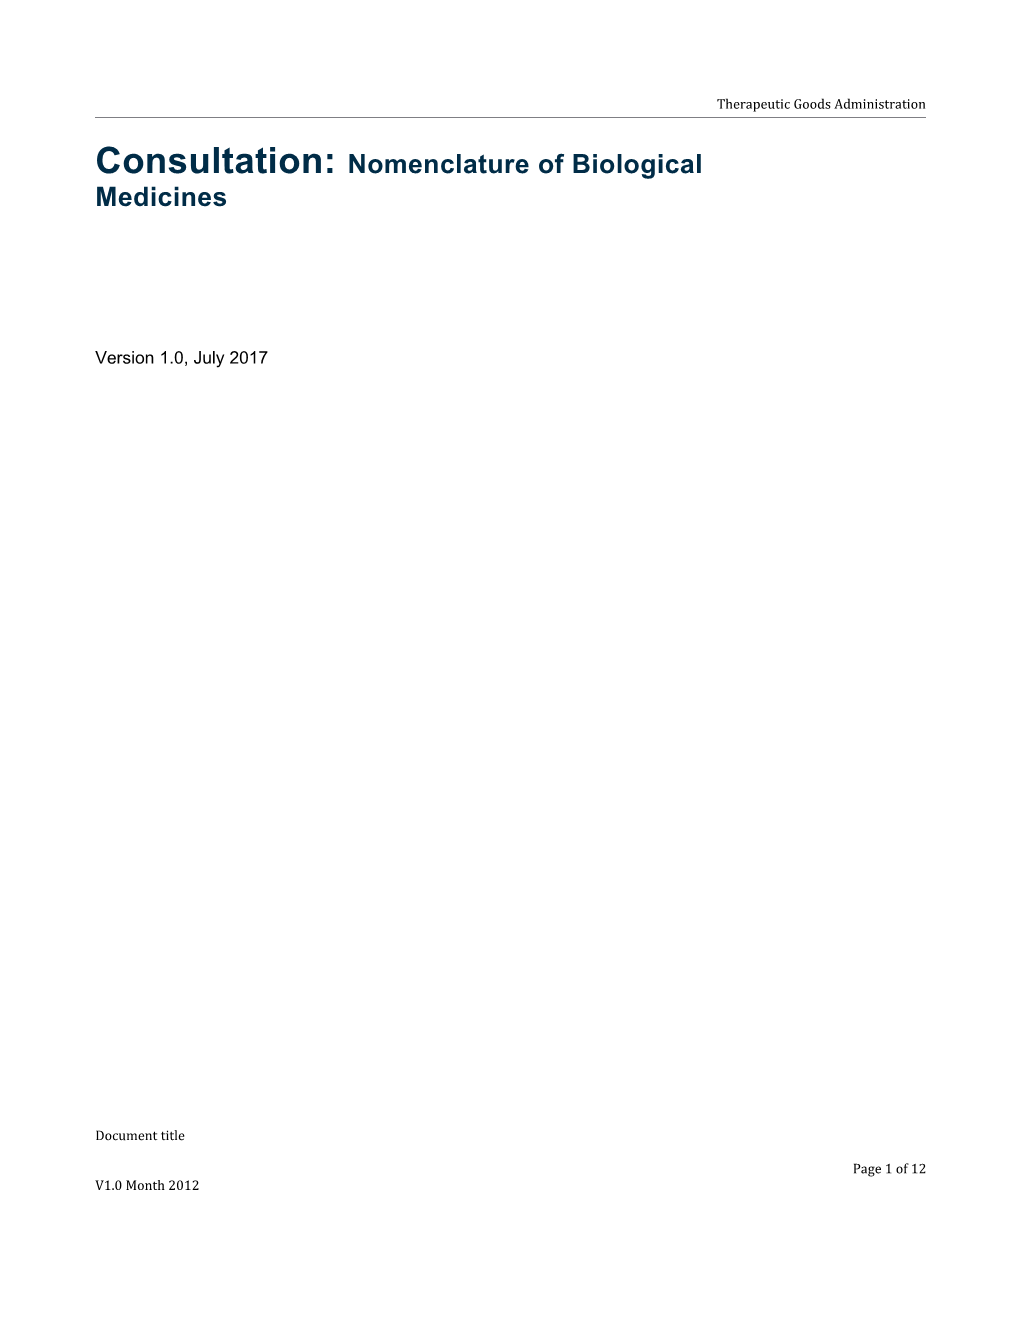 Consultation: Nomenclature of Biological Medicines V1.0 July 2017